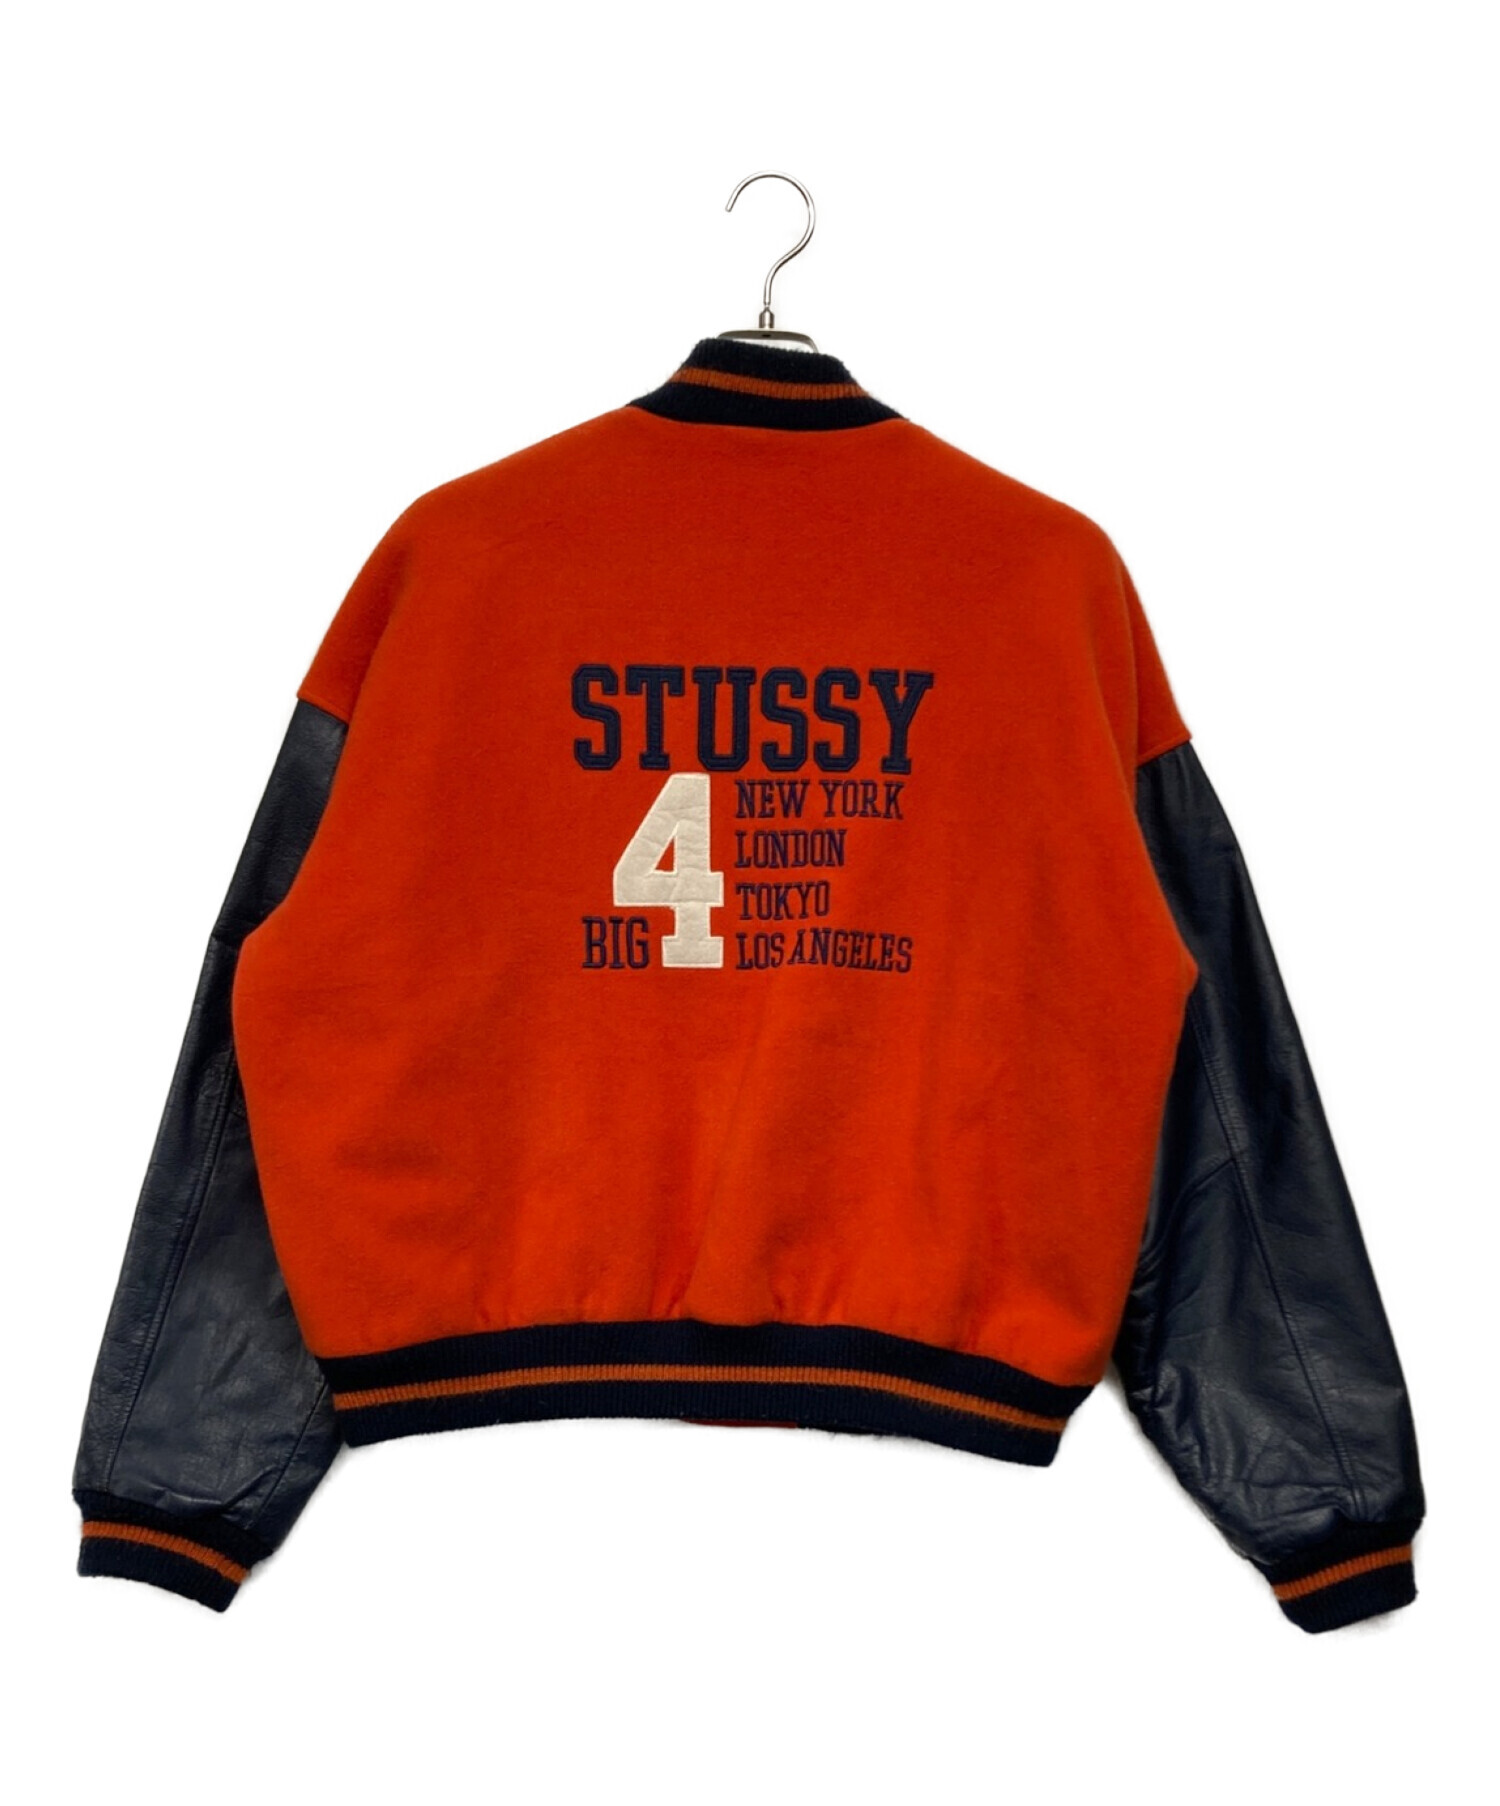 stussy (ステューシー) BIG 4スタジャン オレンジ サイズ:SIZE M